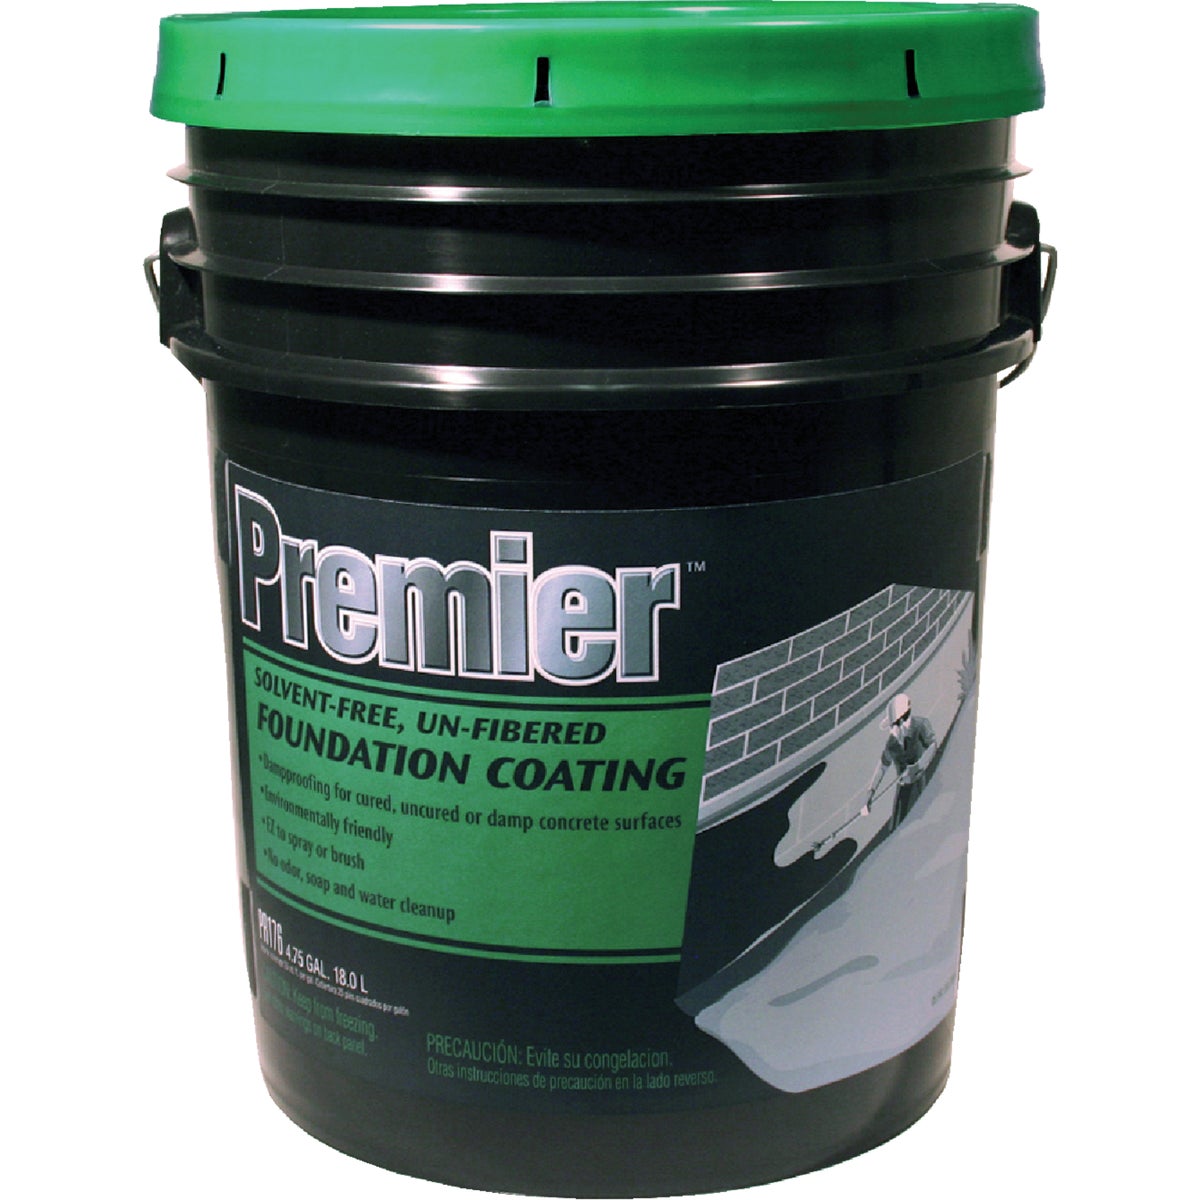 Item 772250, Asphalt emulsion foundation coating is solvent-free and un-fibered.